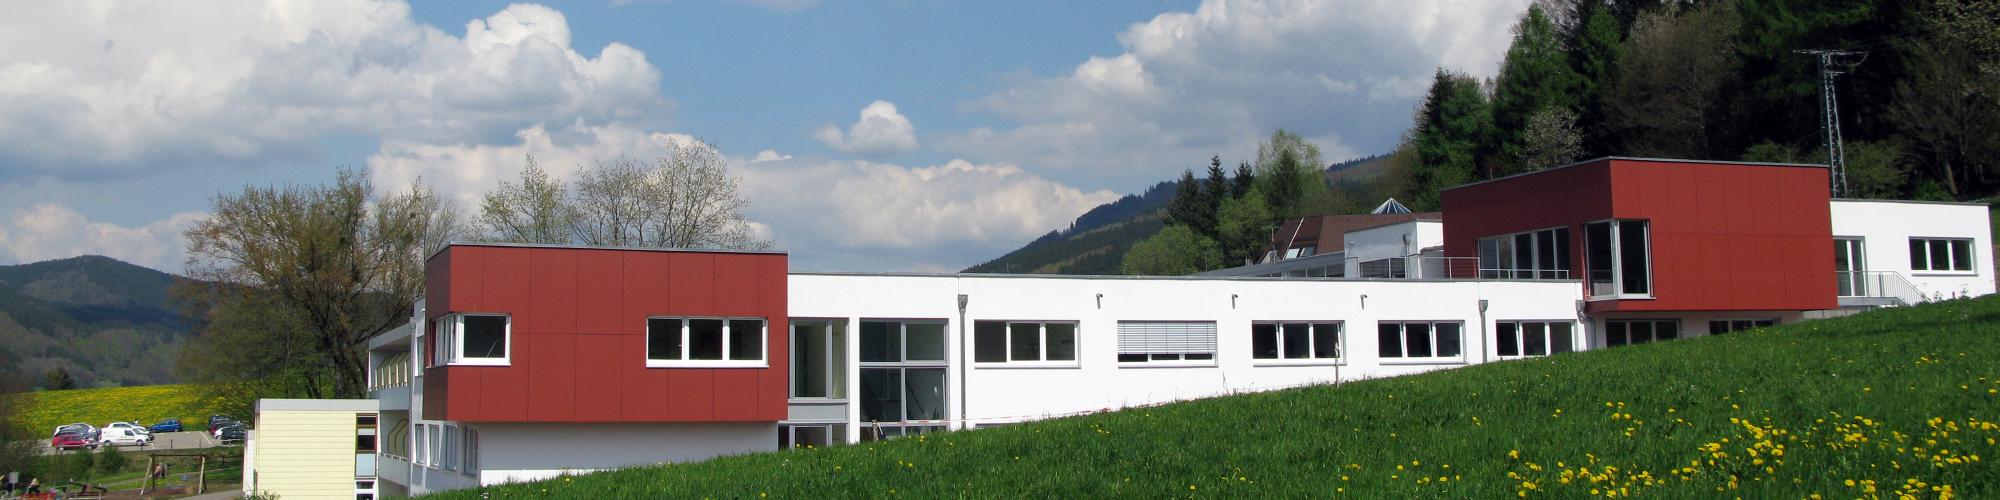 BDH-Klinik Elzach